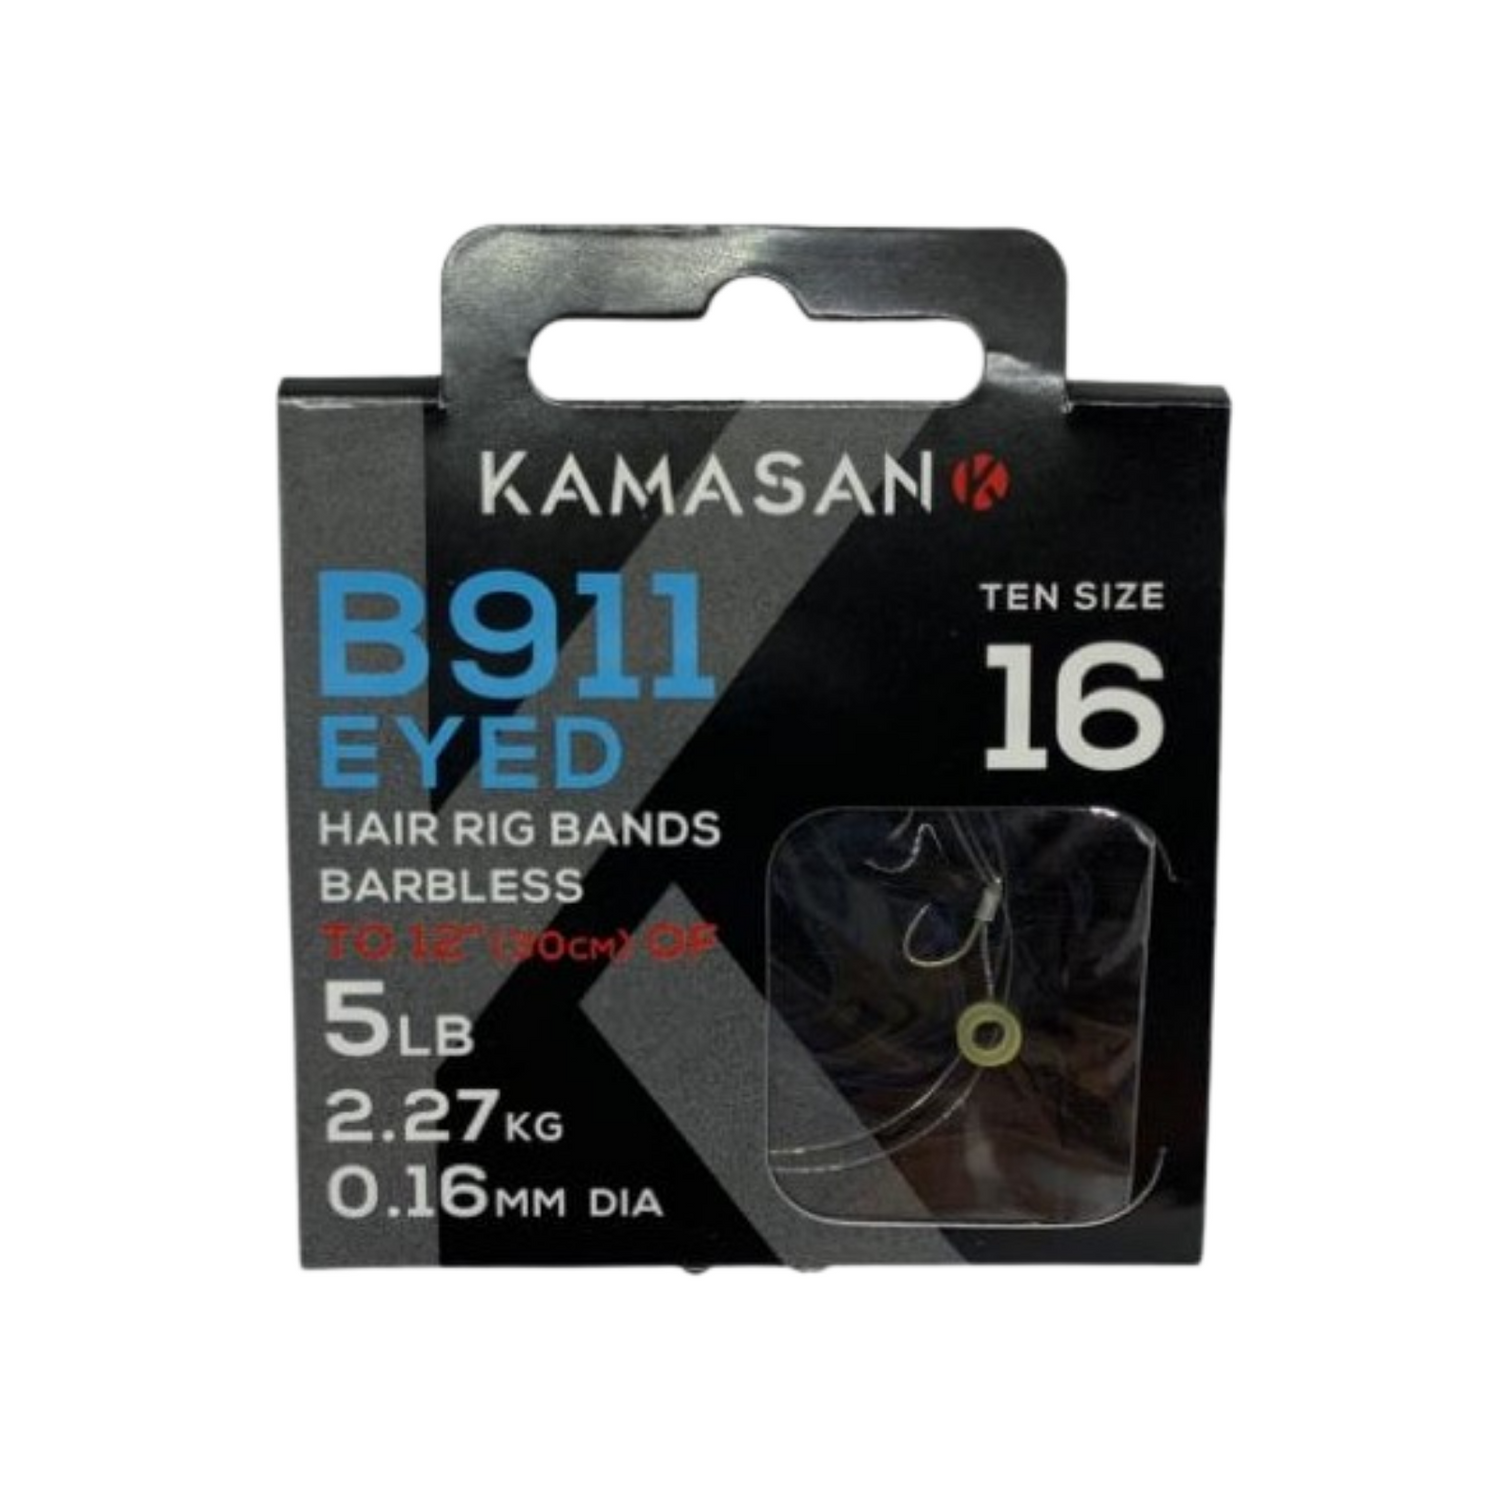 Kamasan B911 Hooks To Nylon with Bait Bands. Size 16